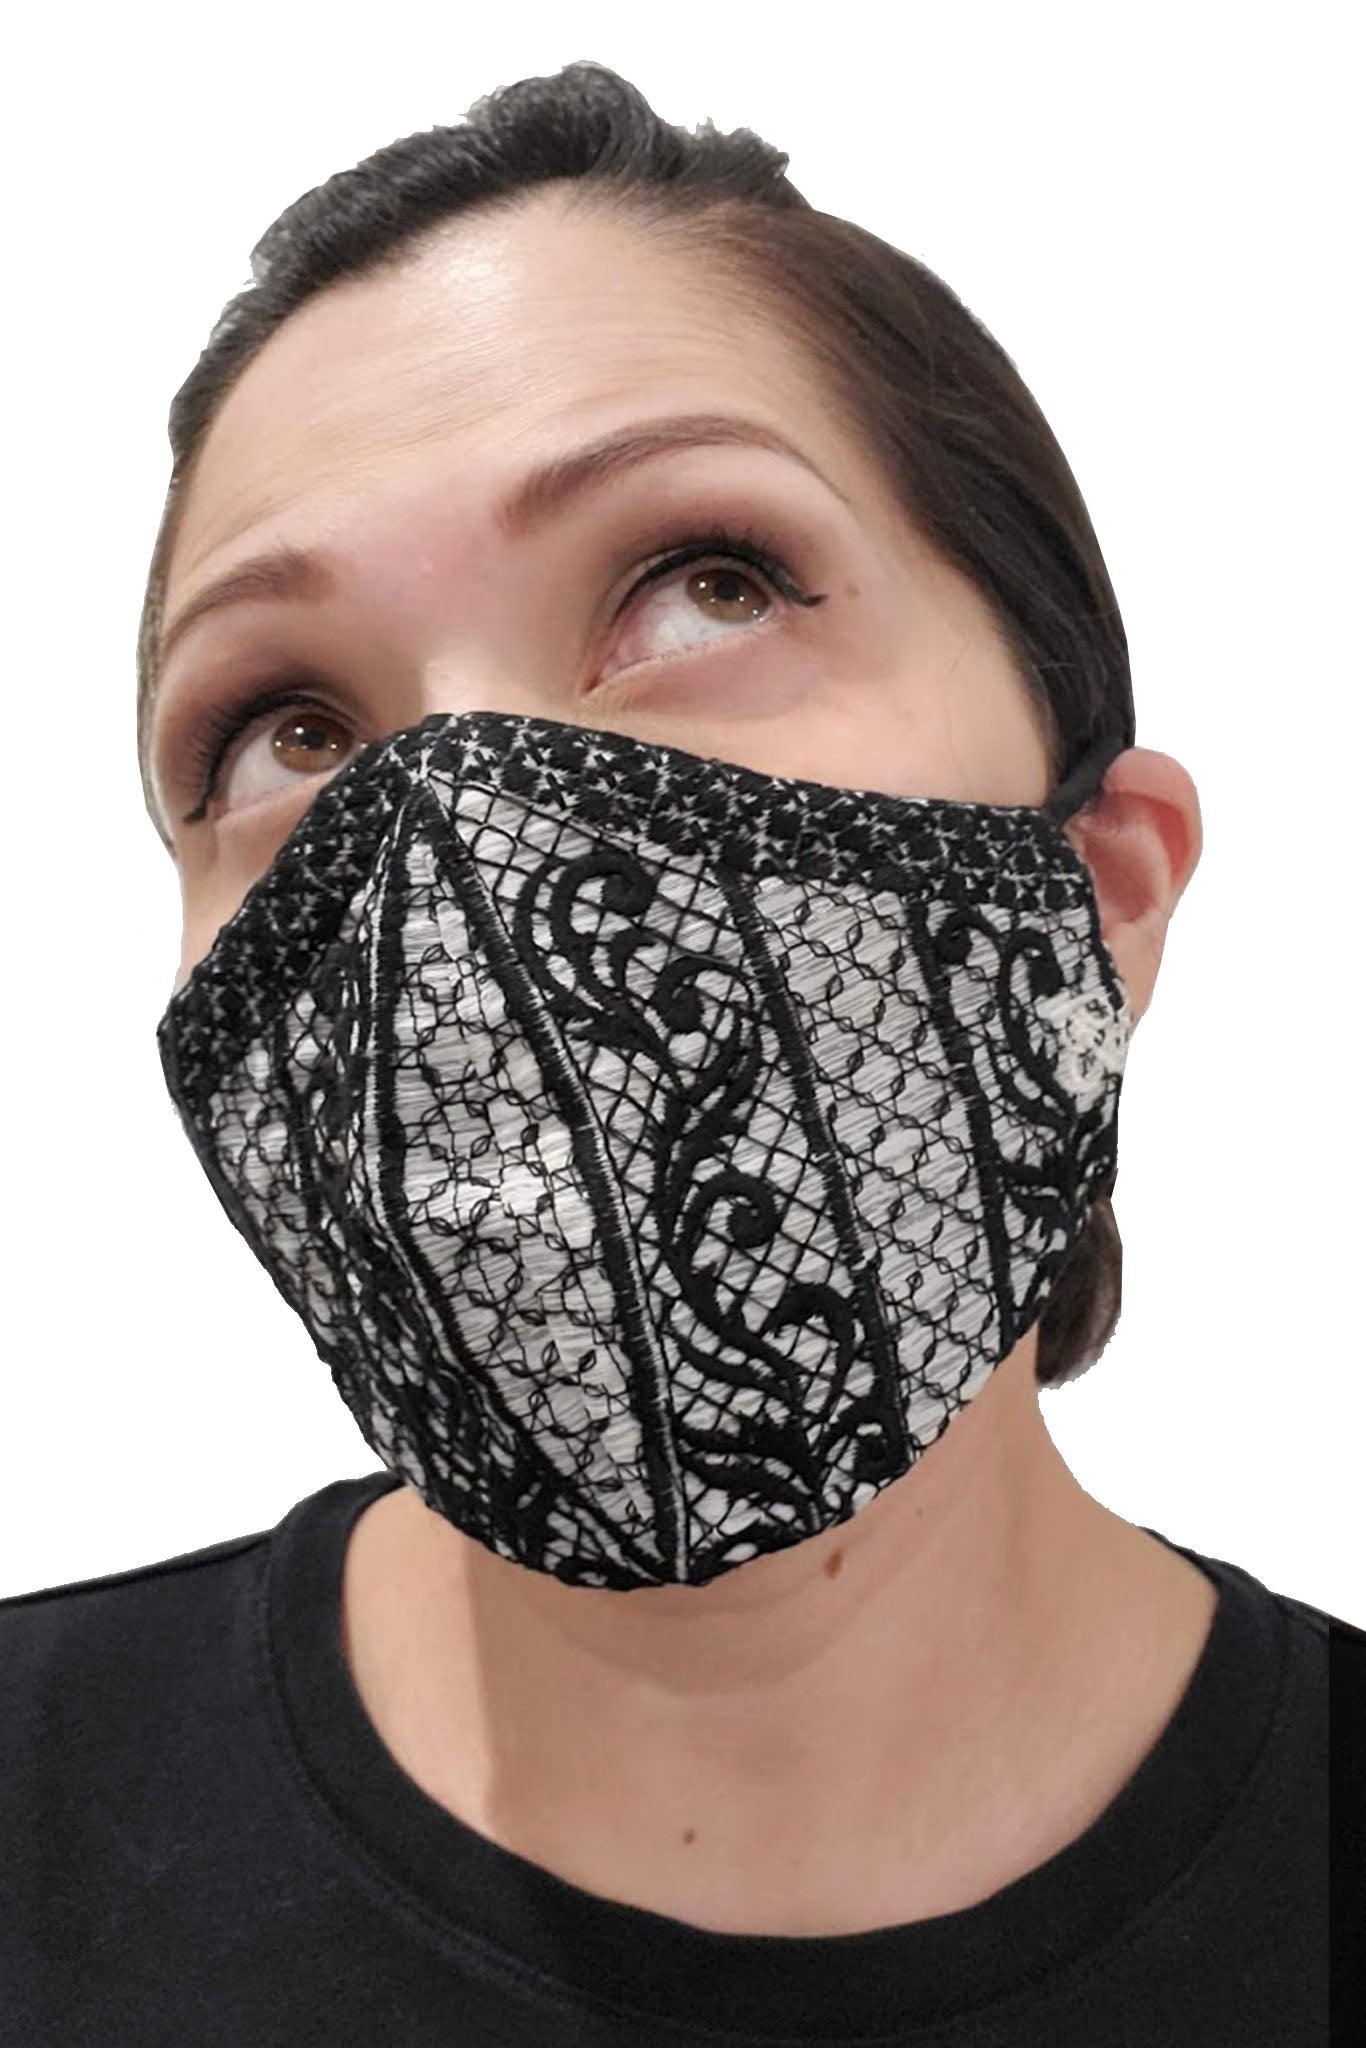 BARONG WAREHOUSE - FX04 - Barong Embroidery Face Mask - Black